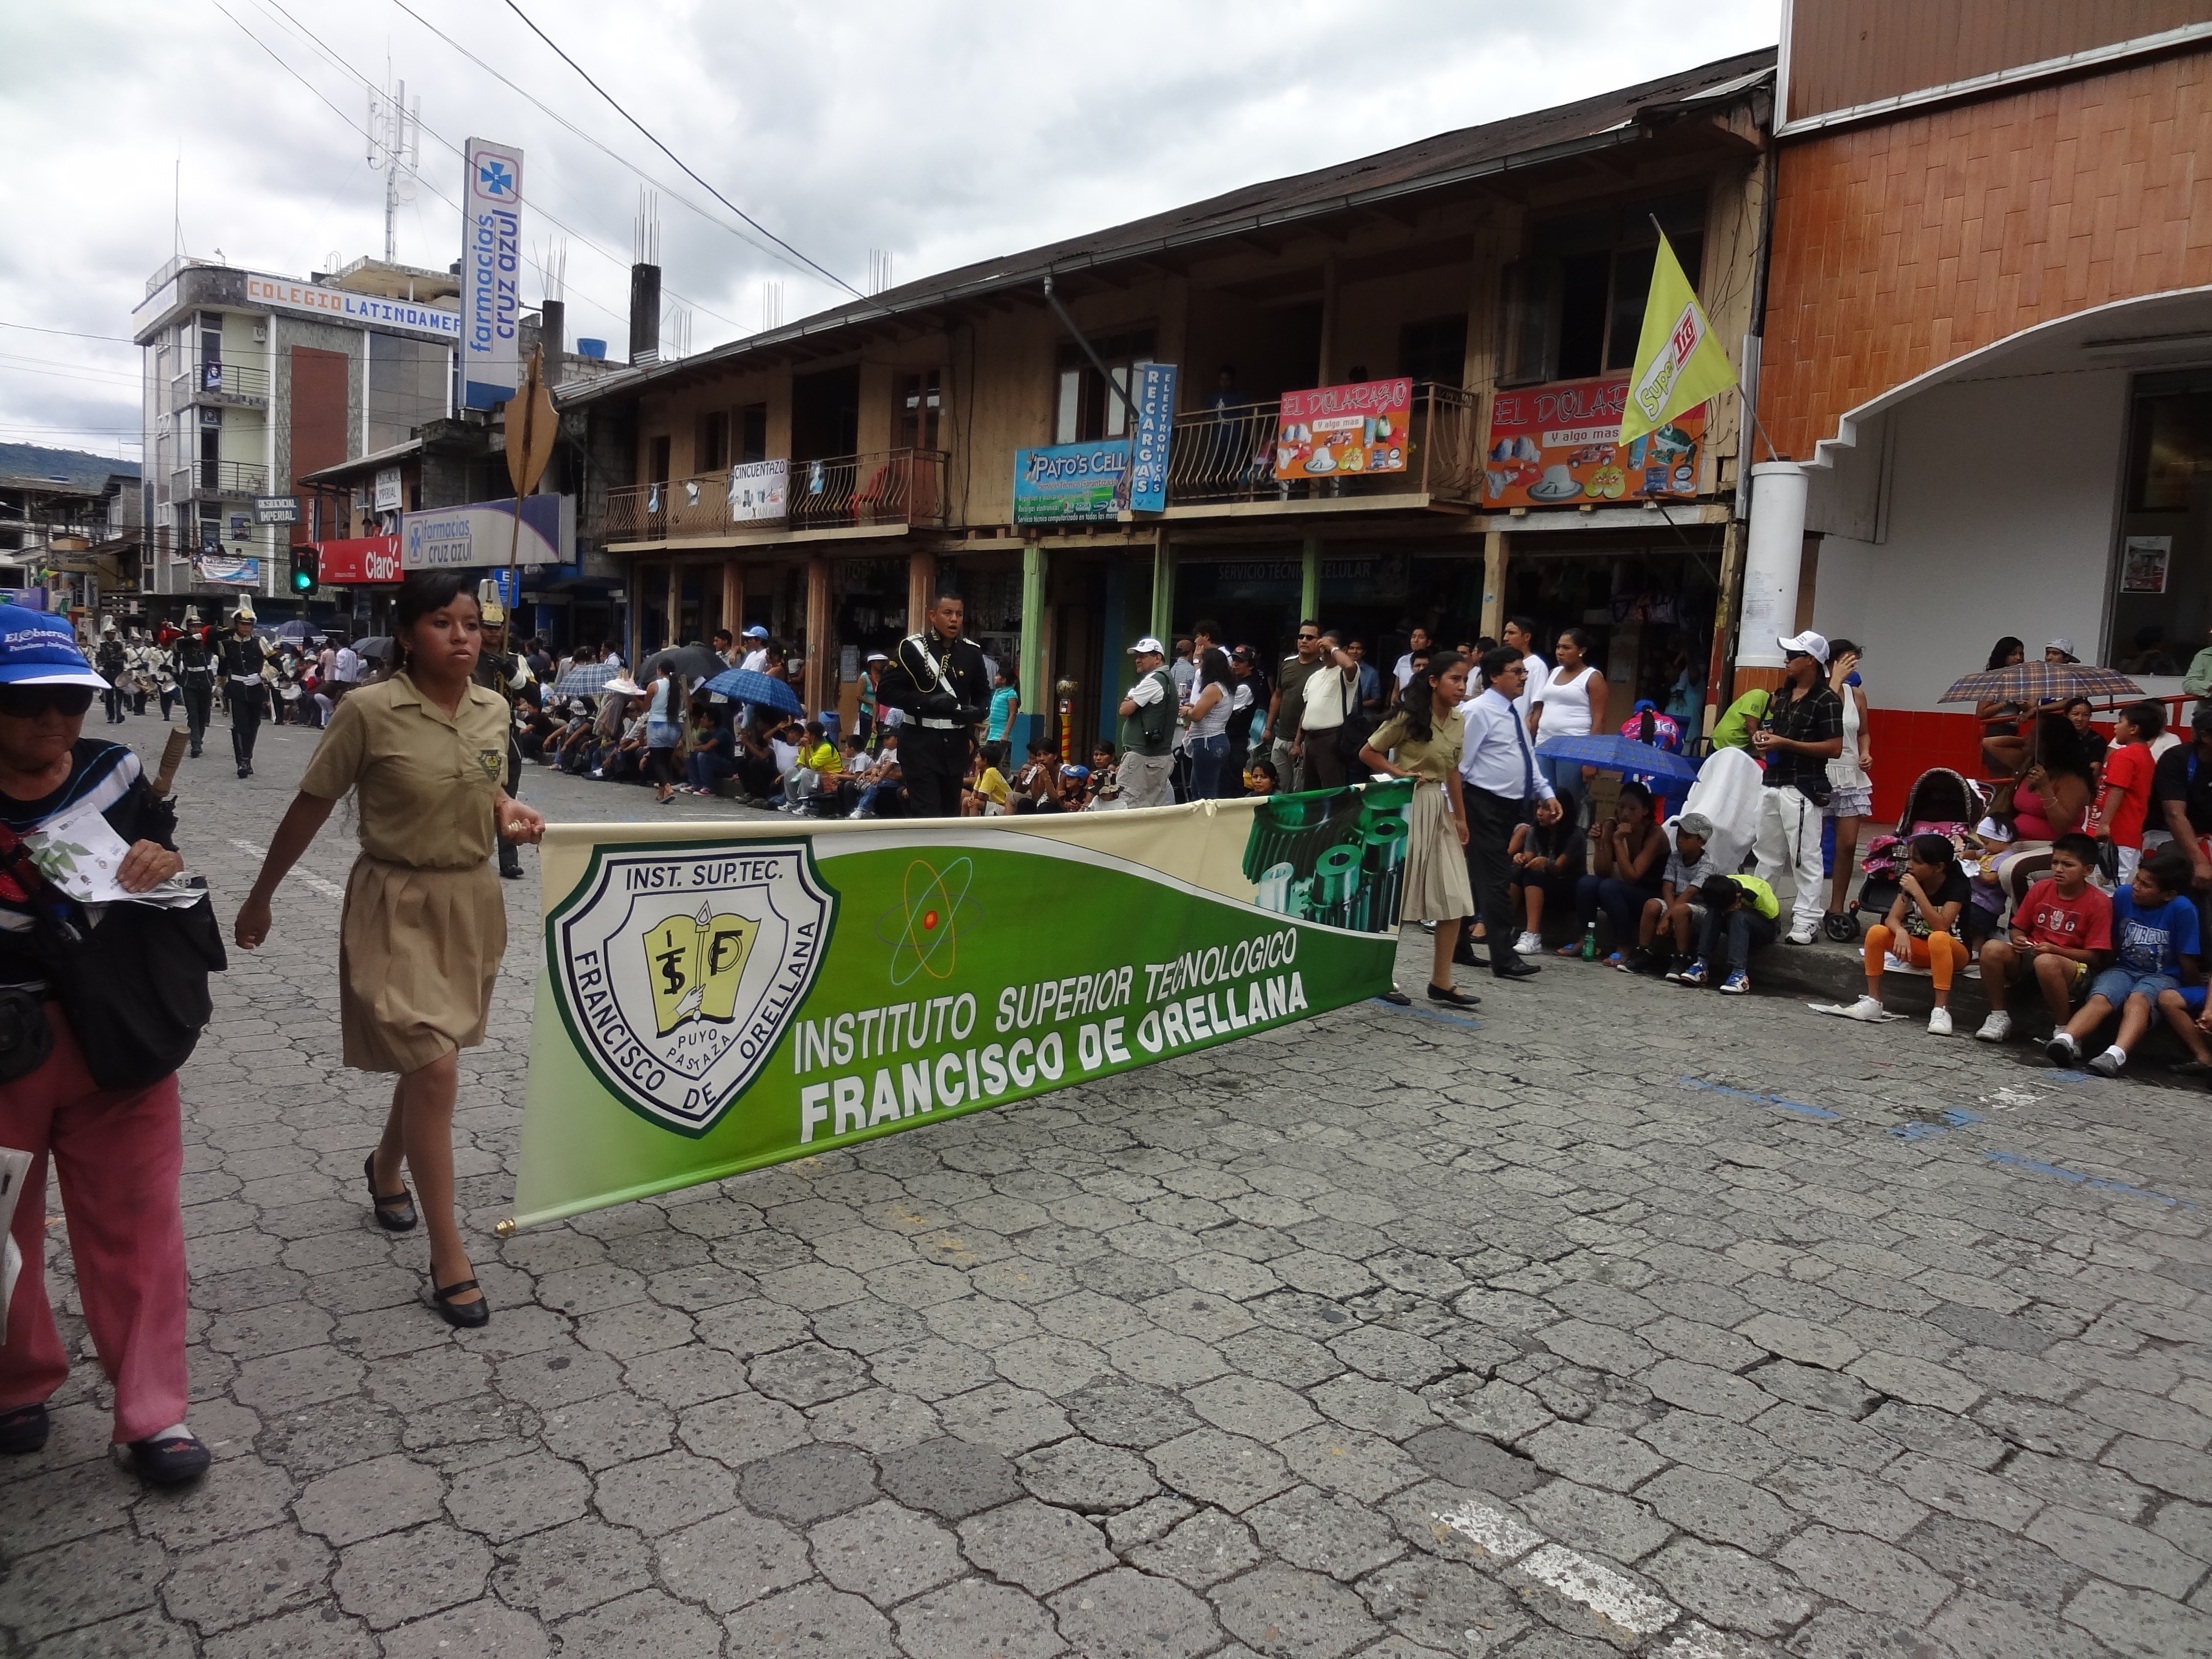 Foto: Instituto Francisco de Orellana - Puyo (Pastaza), Ecuador